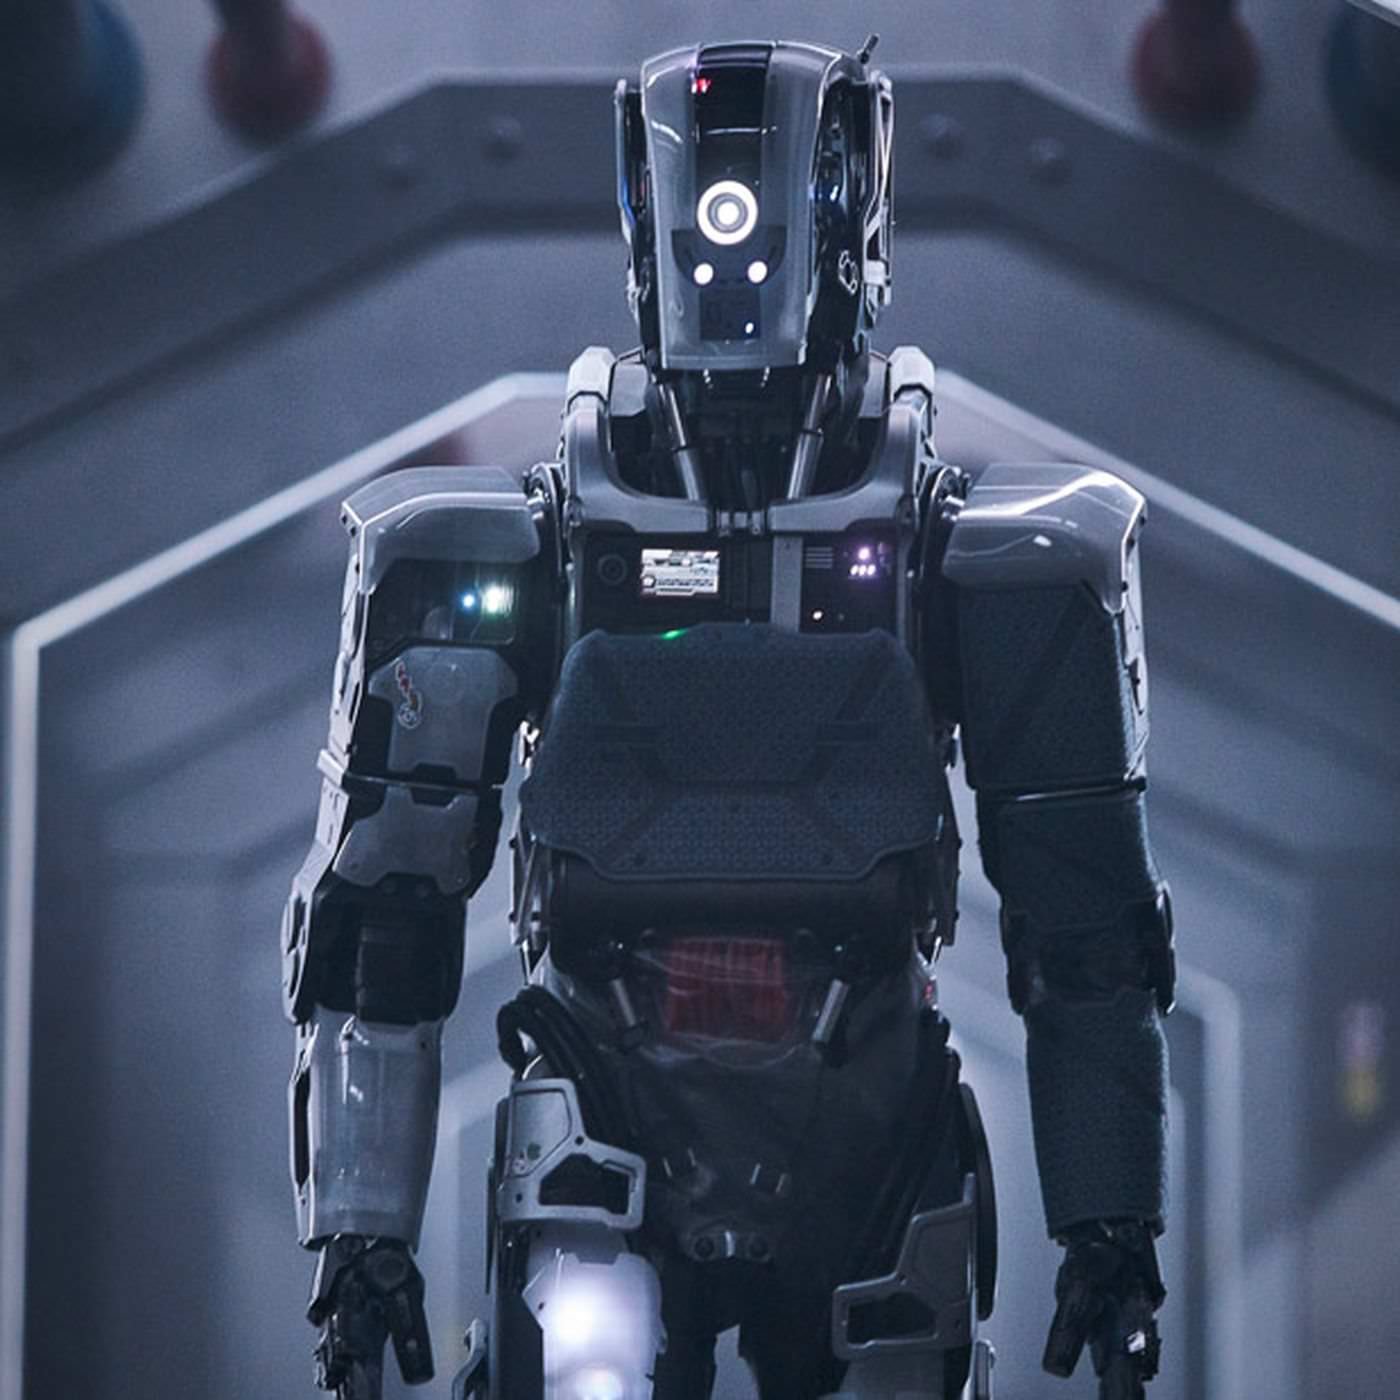 電影【AI終結戰】影評解析、台詞：當機器人扮演上帝的角色、劇本原創性極高 I Am Mother